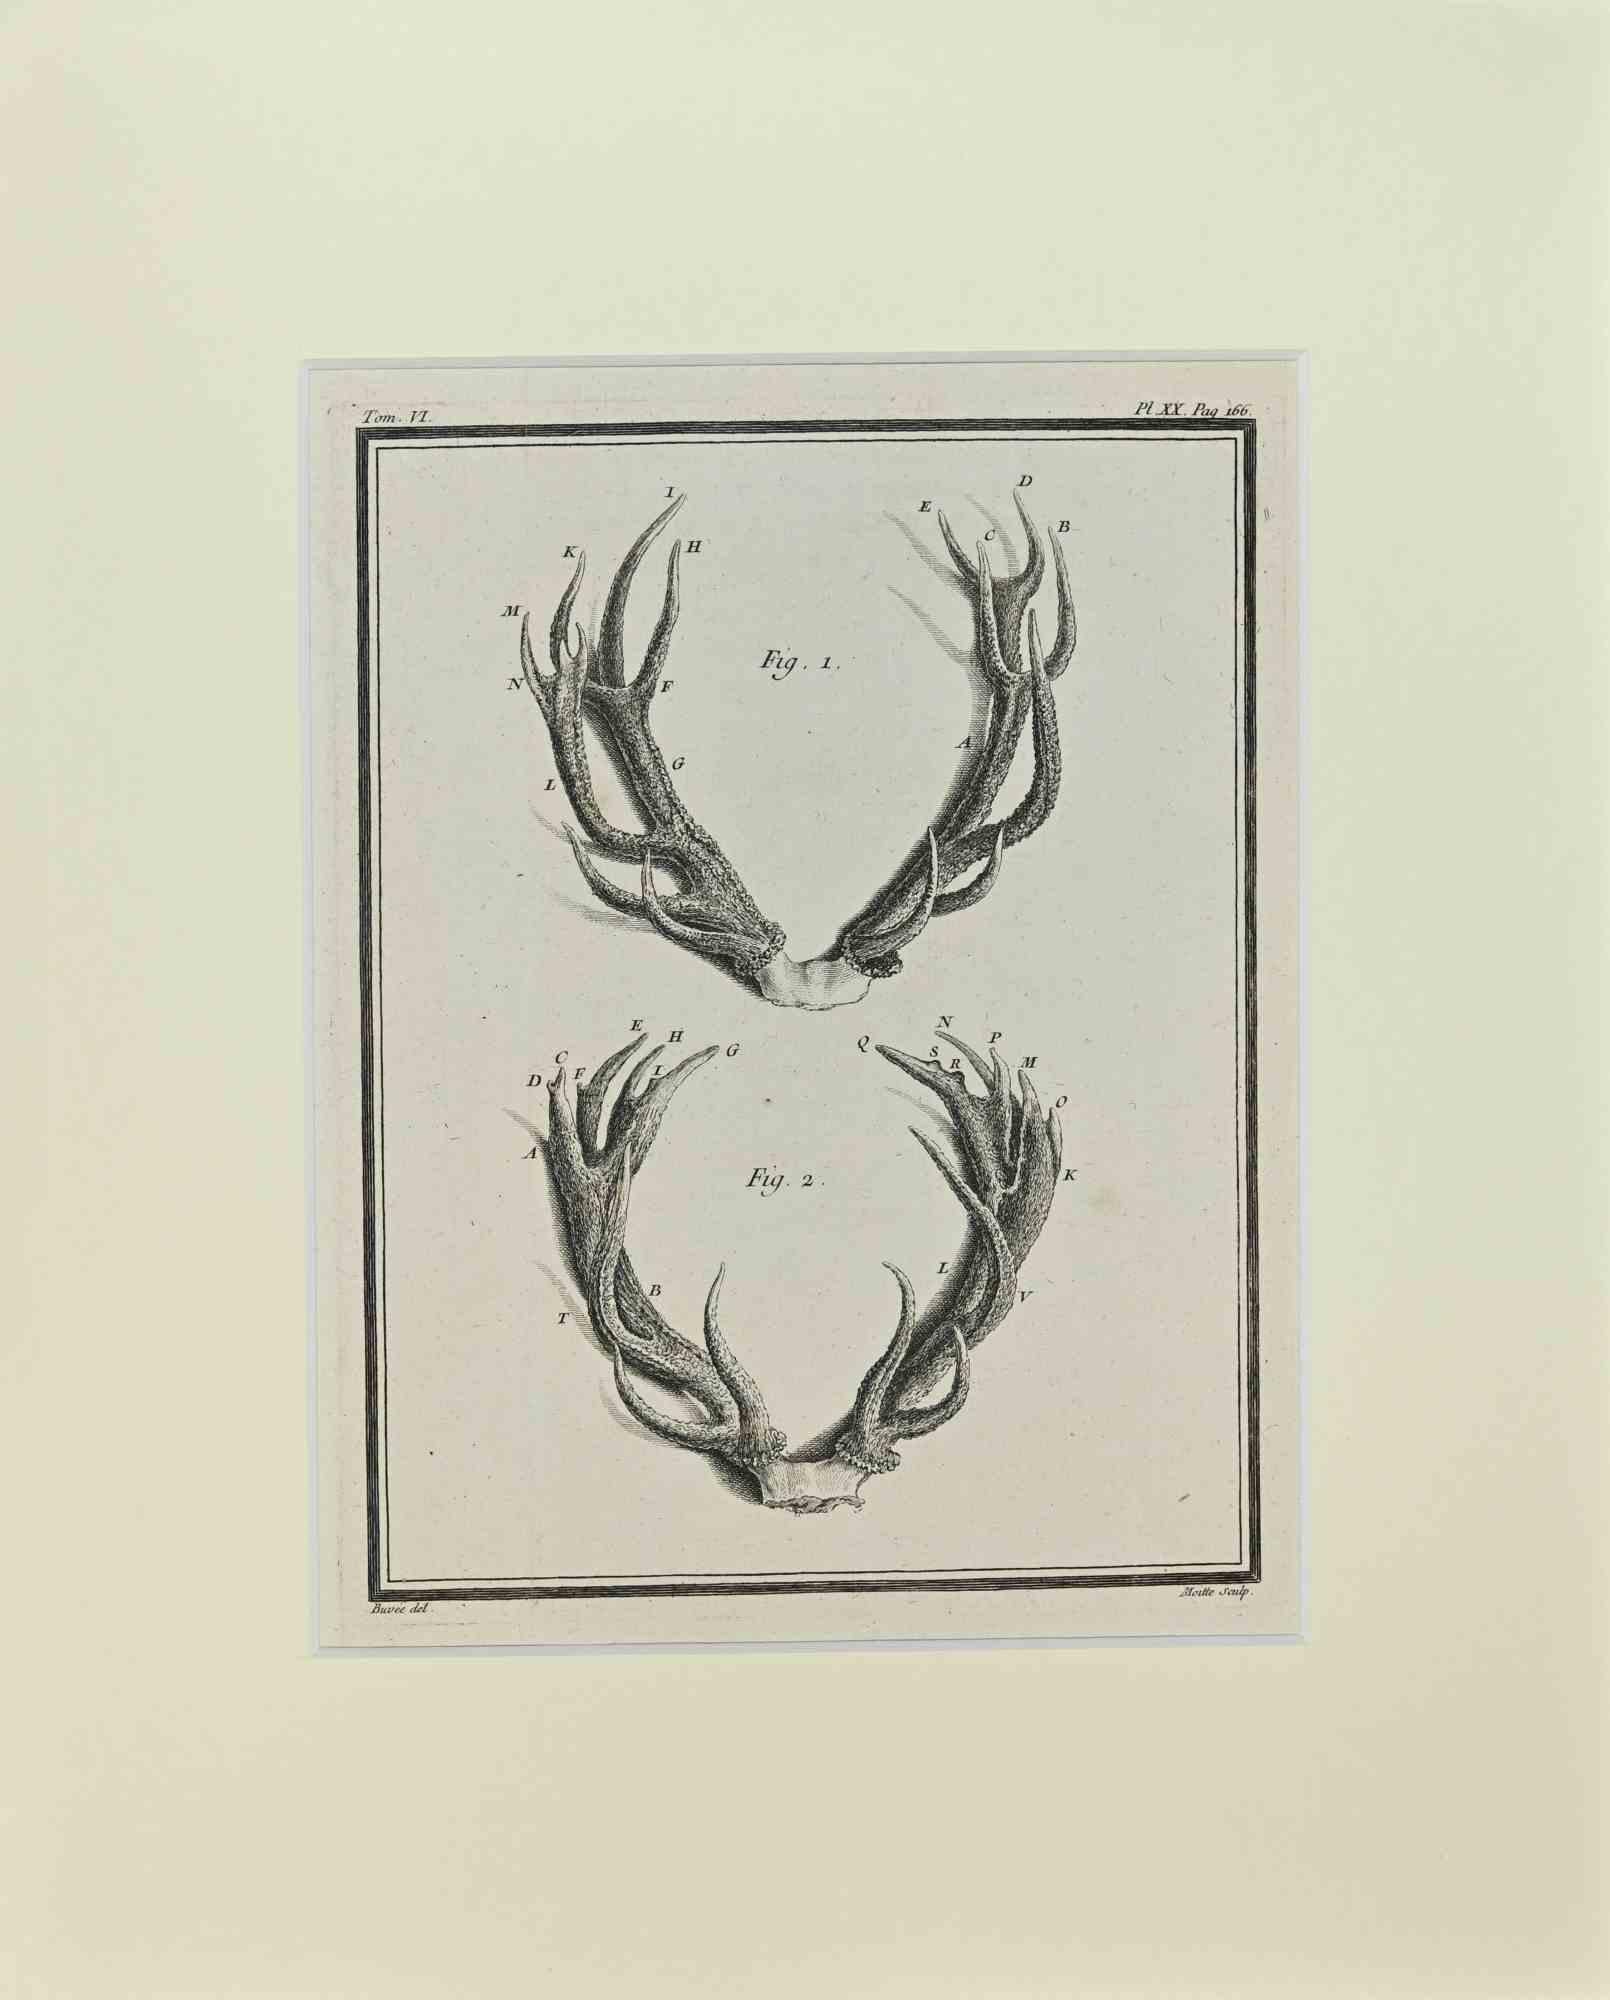 Cornamentas ist ein Kunstwerk von Buvée l'Américain aus dem Jahr 1771.  

Radierung B./W. Druck auf Elfenbeinpapier. Signiert auf der Platte am unteren linken Rand.

Das Werk ist auf Karton geklebt. Abmessungen insgesamt: 35x28 cm.

Das Kunstwerk